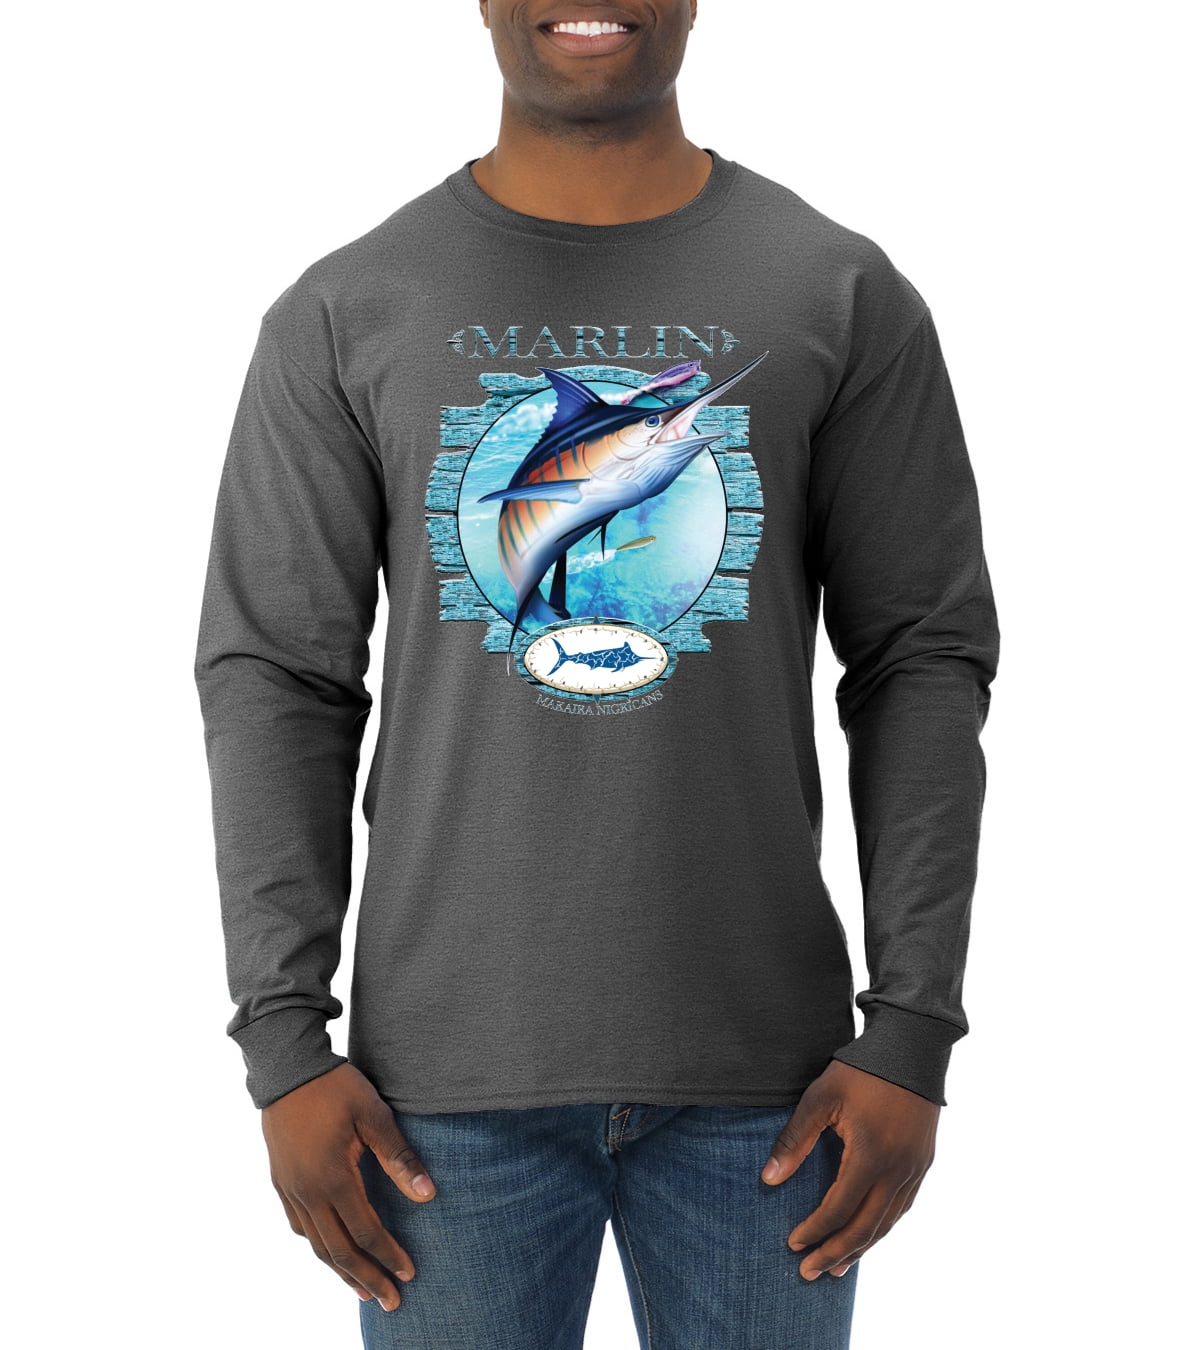 Florida marlin fishing club shirt, hoodie, sweatshirt for men and women